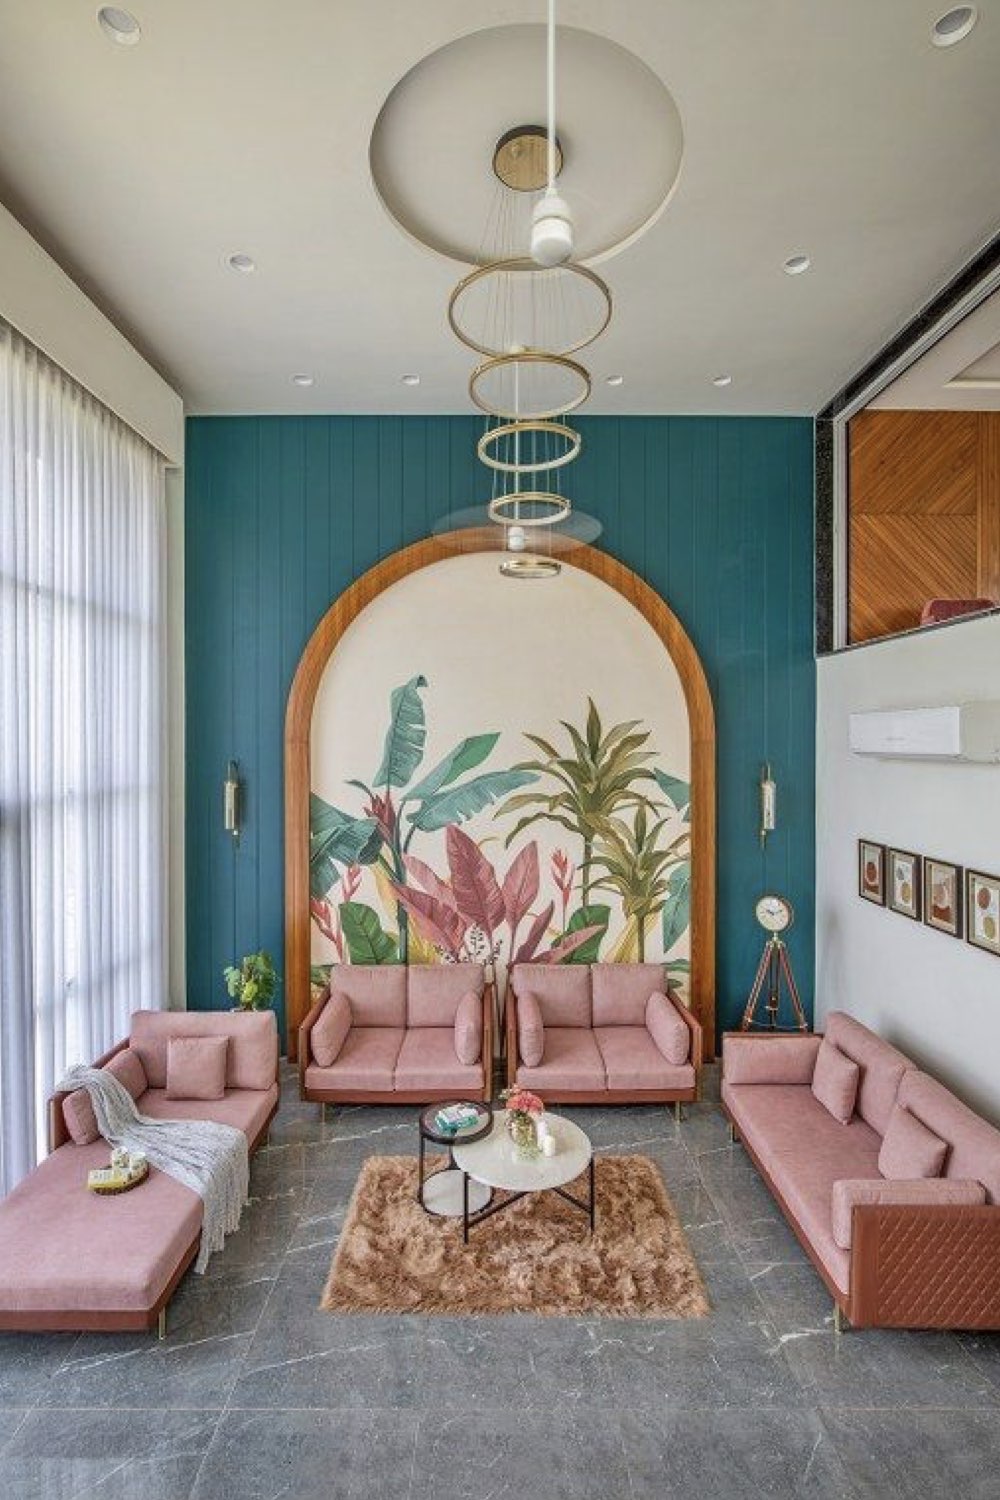 comment reussir deco salon décor mural original mélange lambris peint bleu canard et fresque tropicale canapé et fauteuil rose